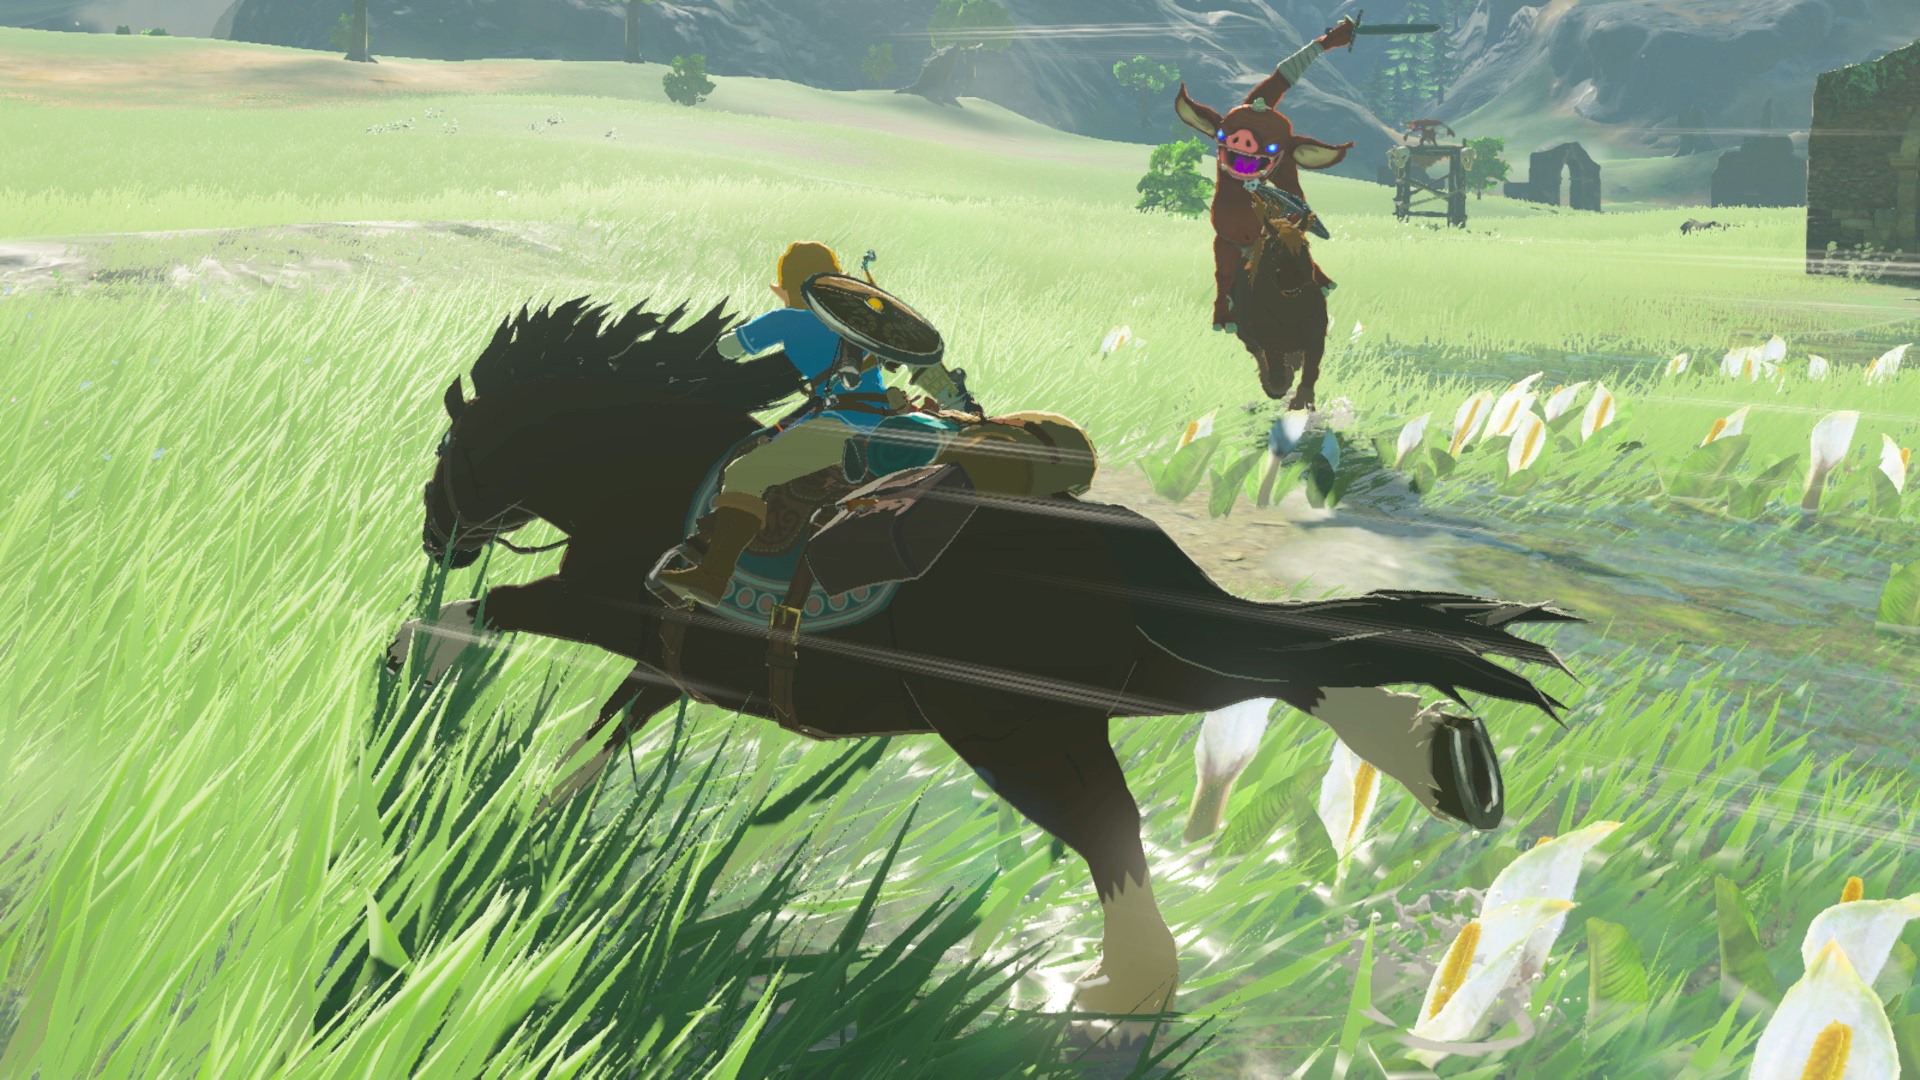 Link on horseback